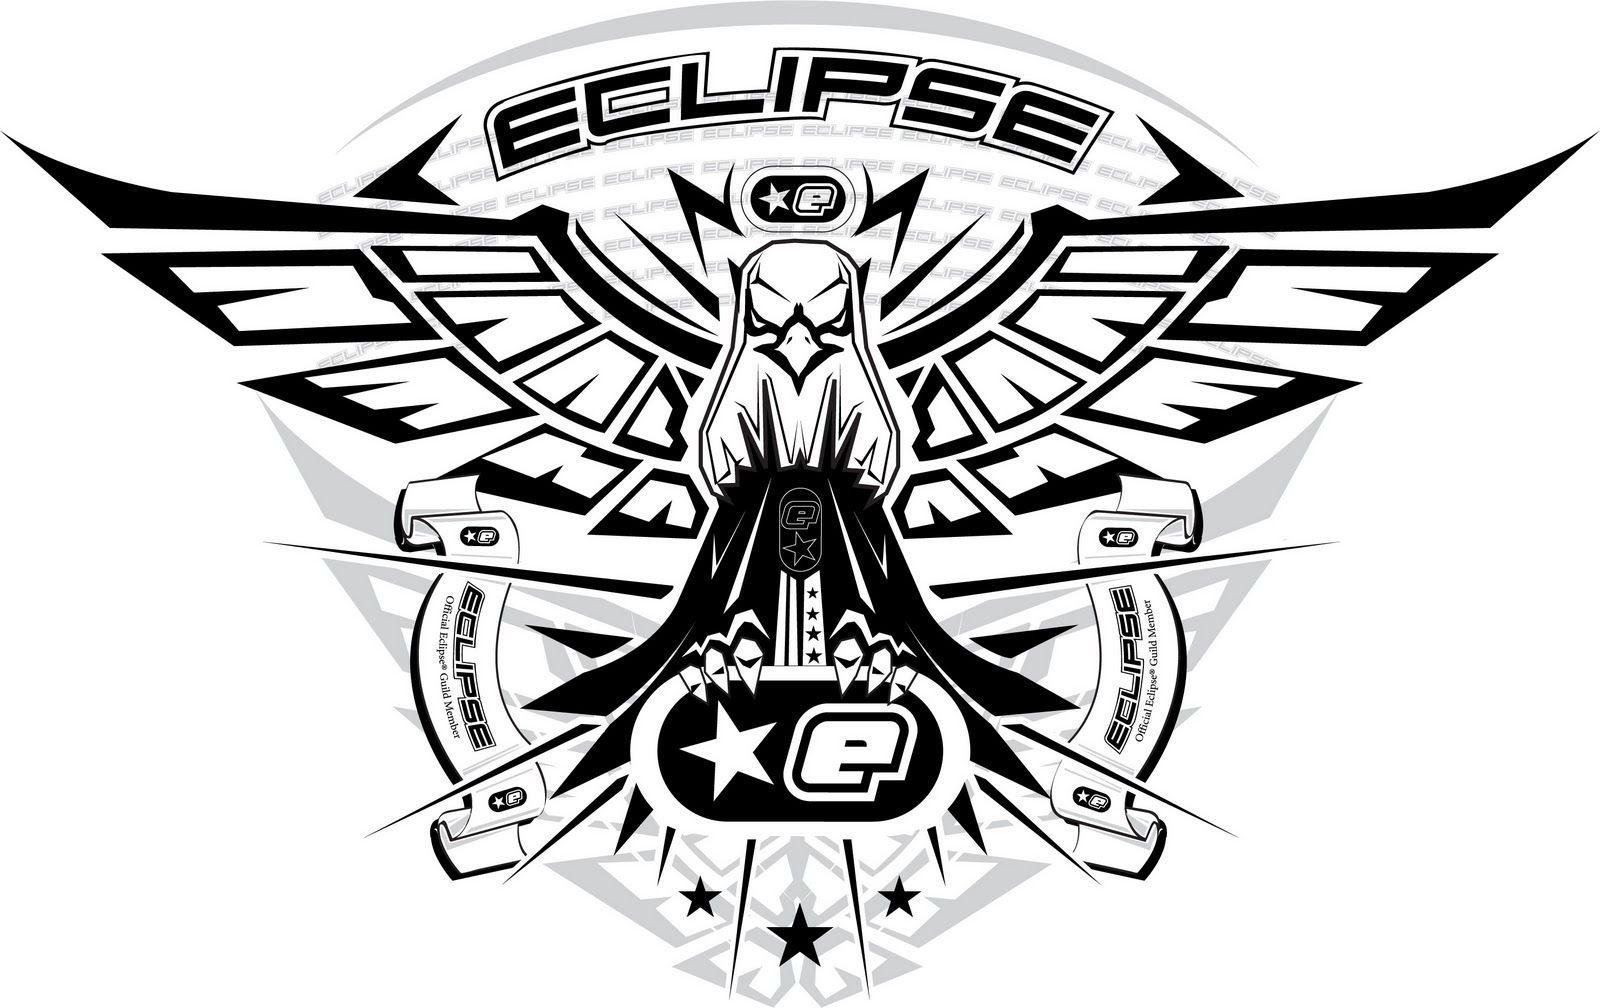 planet eclipse logo wallpaper